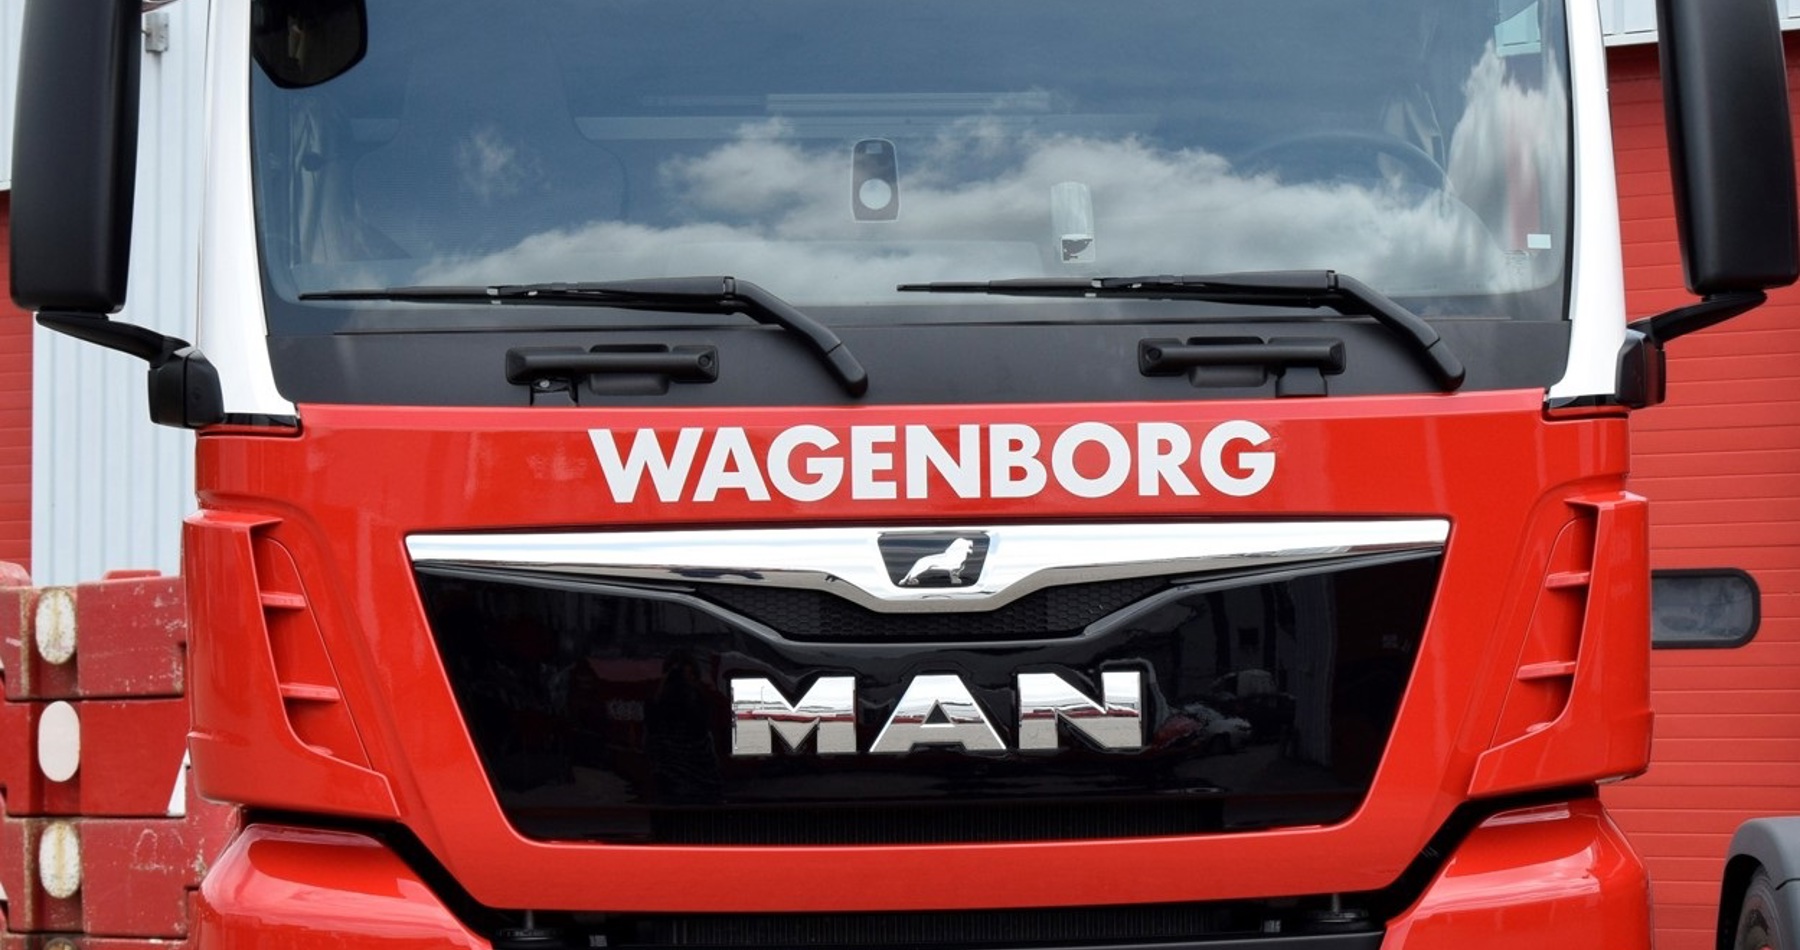 Five brand new MAN trucks for Wagenborg Nedlift